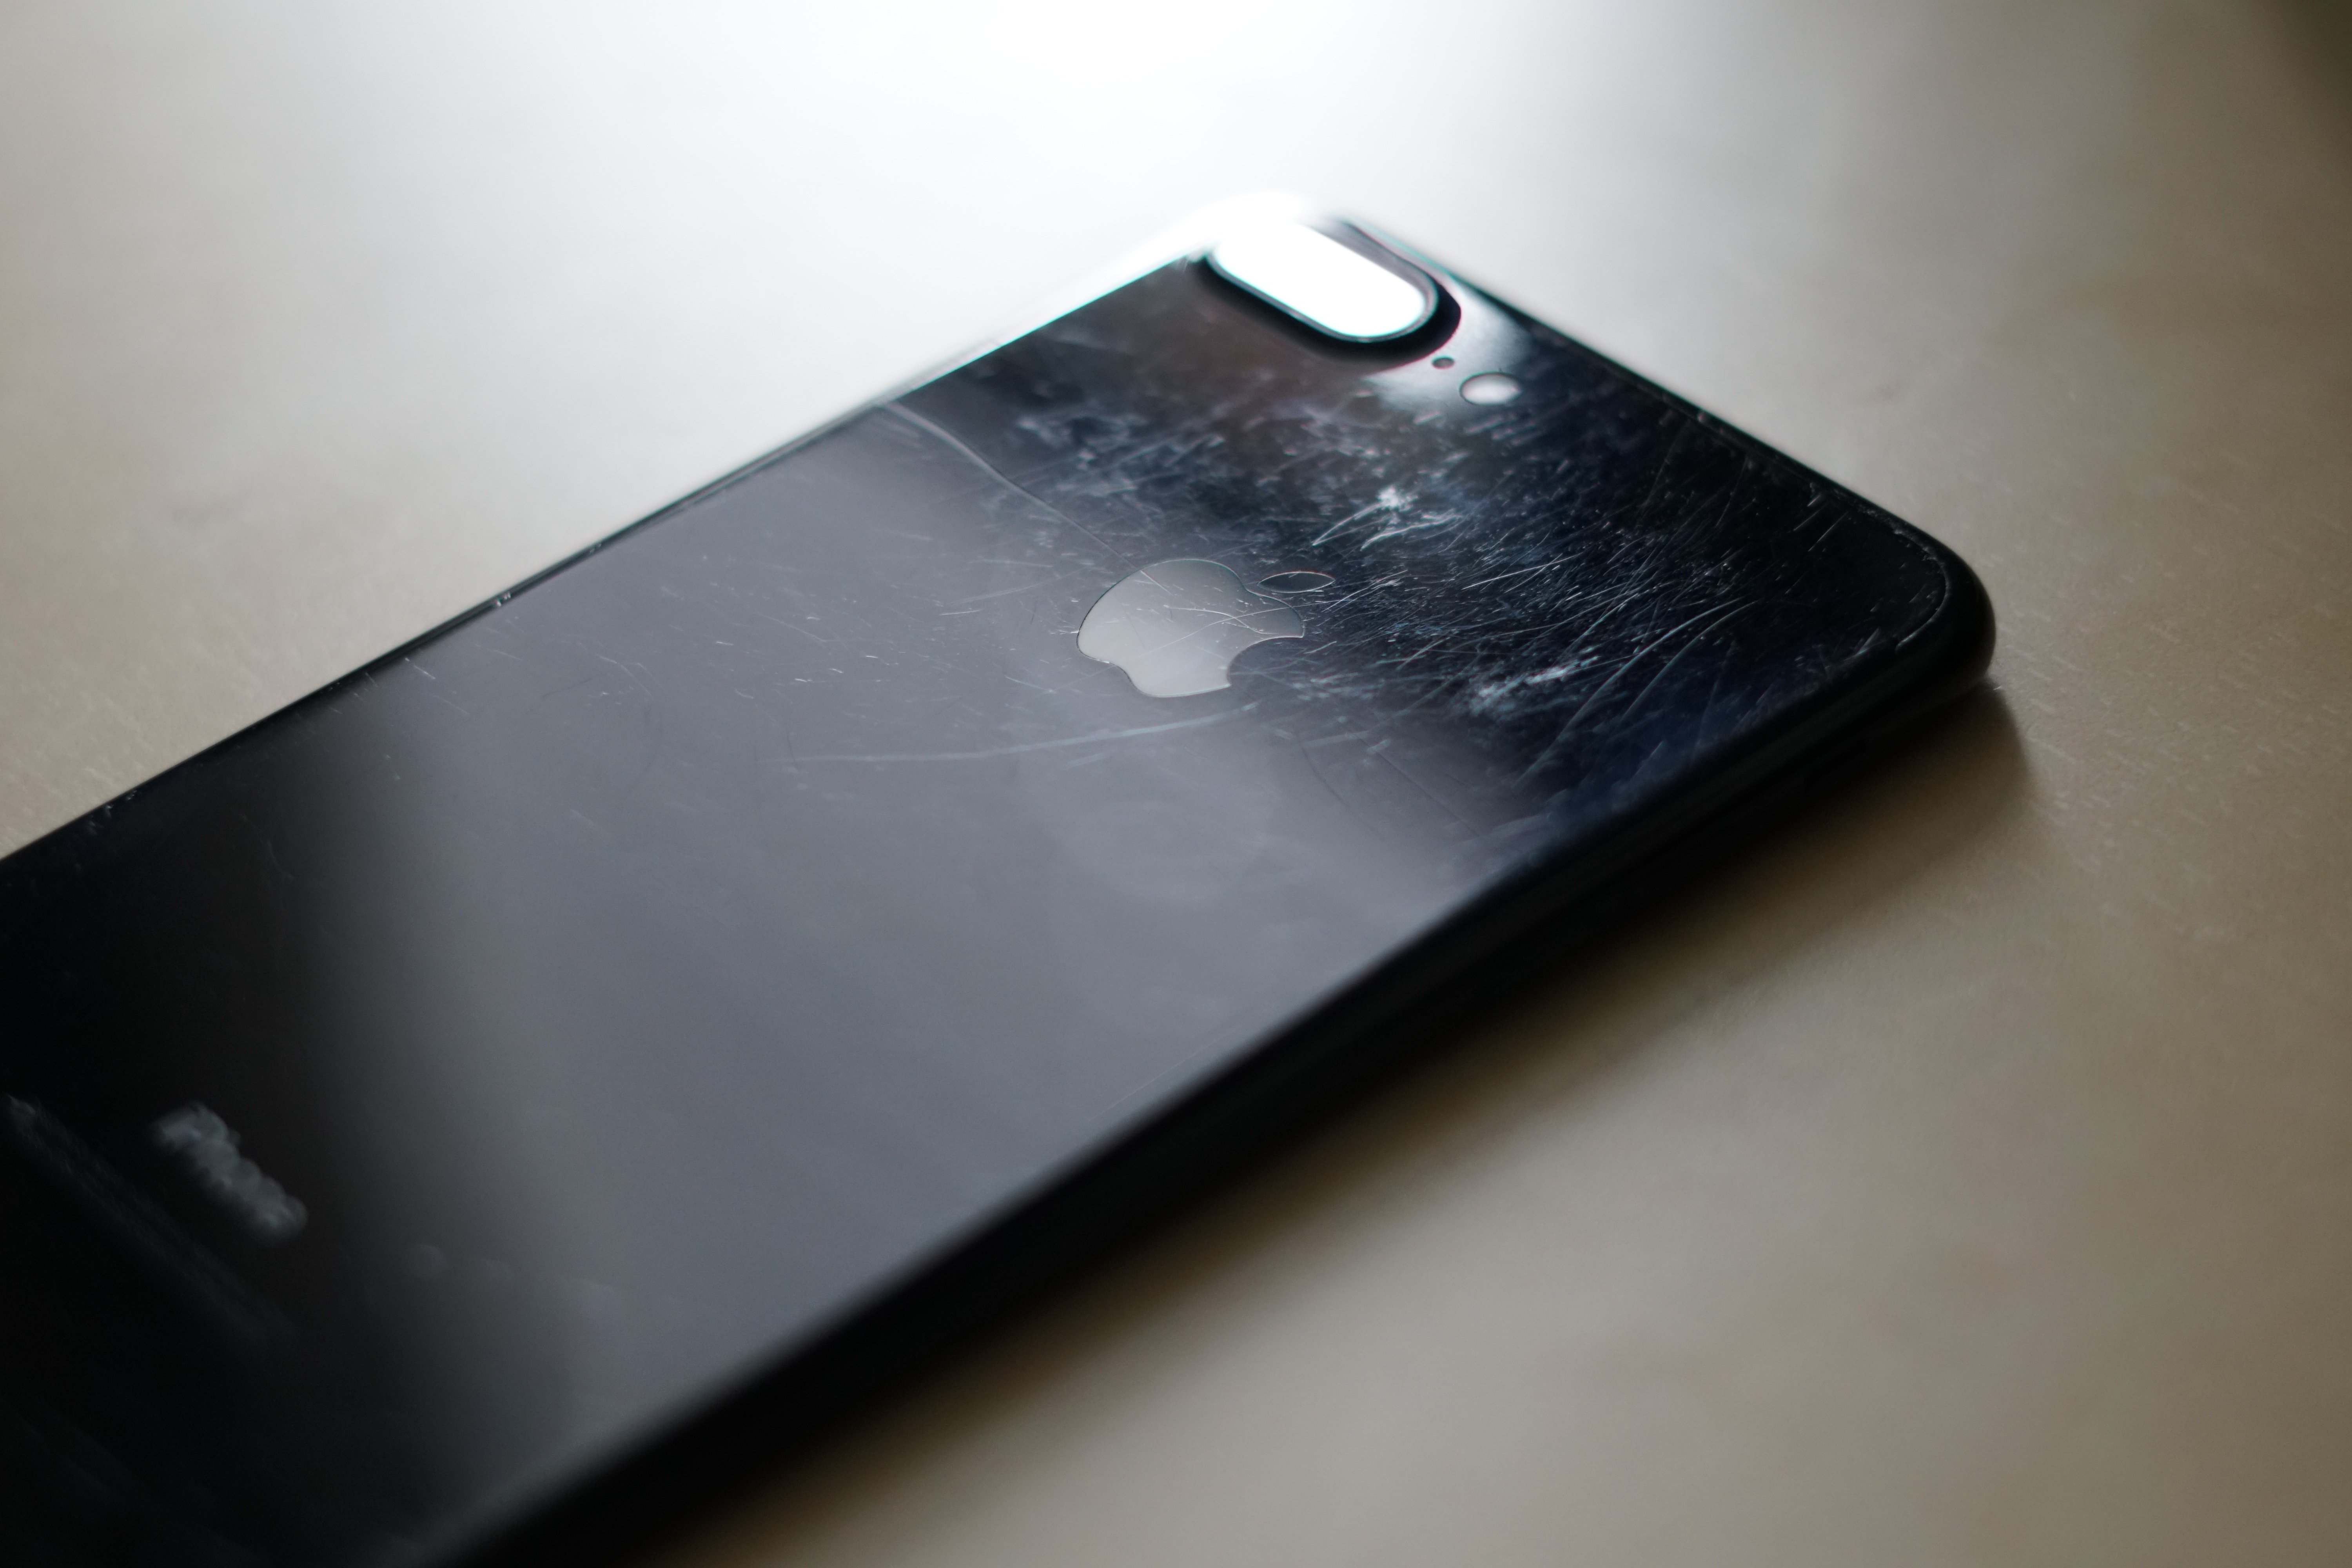 iPhone 7 Jet Black sembra usato 1 anno 1